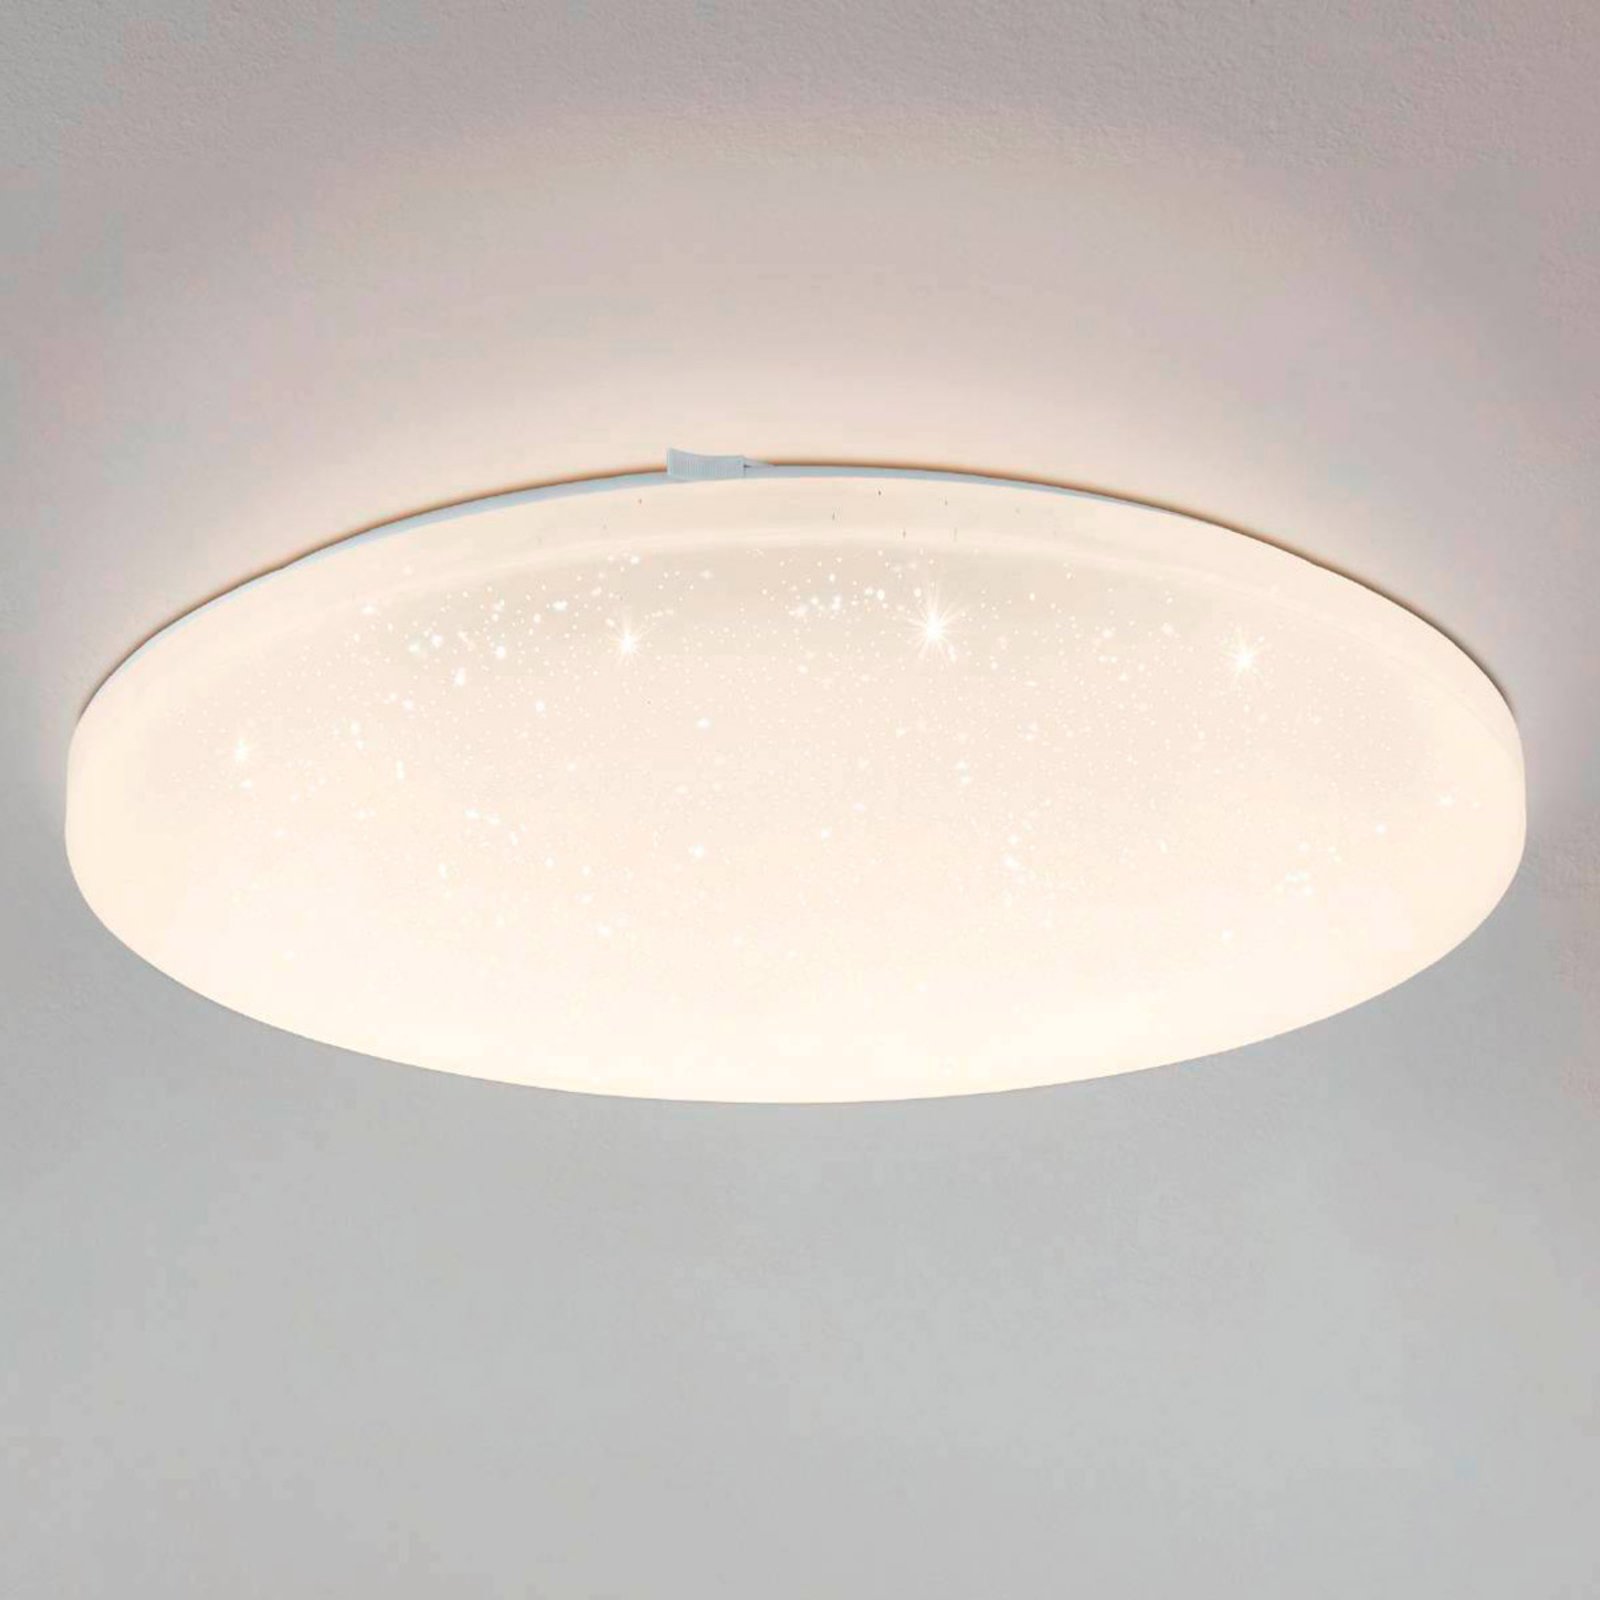 Stropné LED svietidlo Frania-S efekt krištáľ Ø43cm